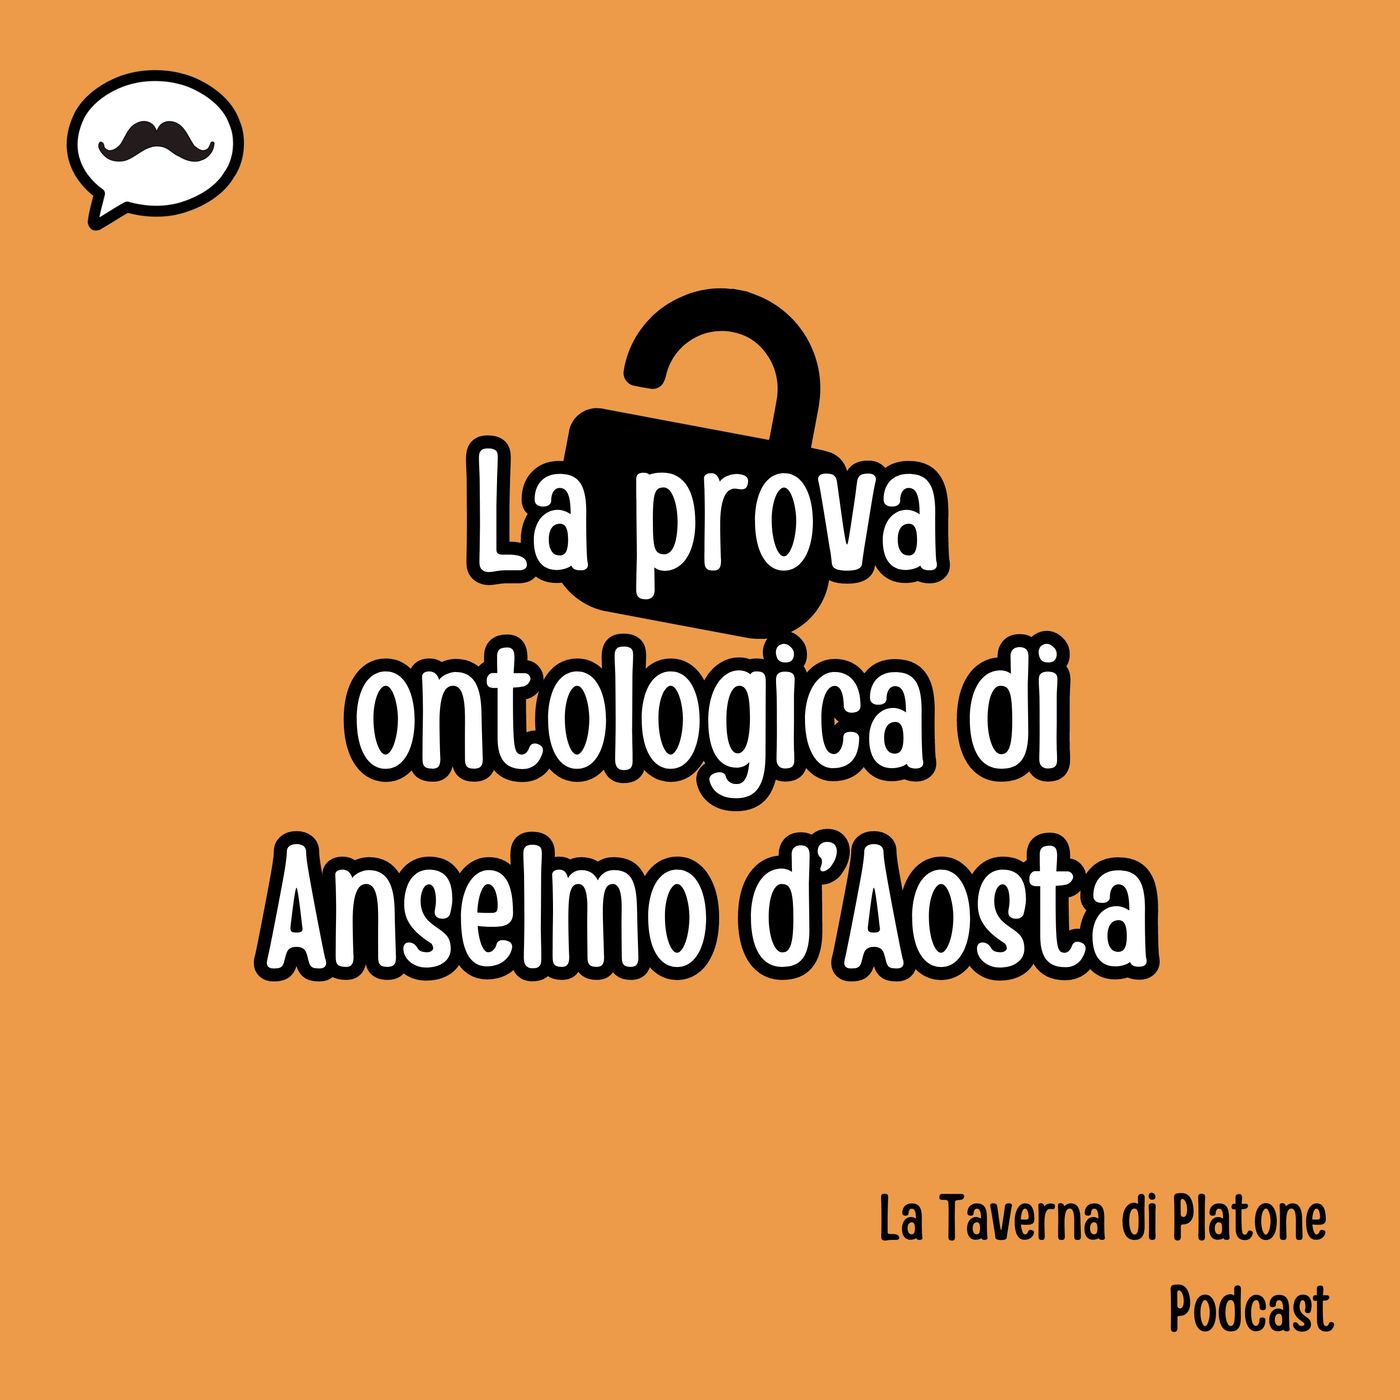 La prova ontologica di Anselmo d'Aosta